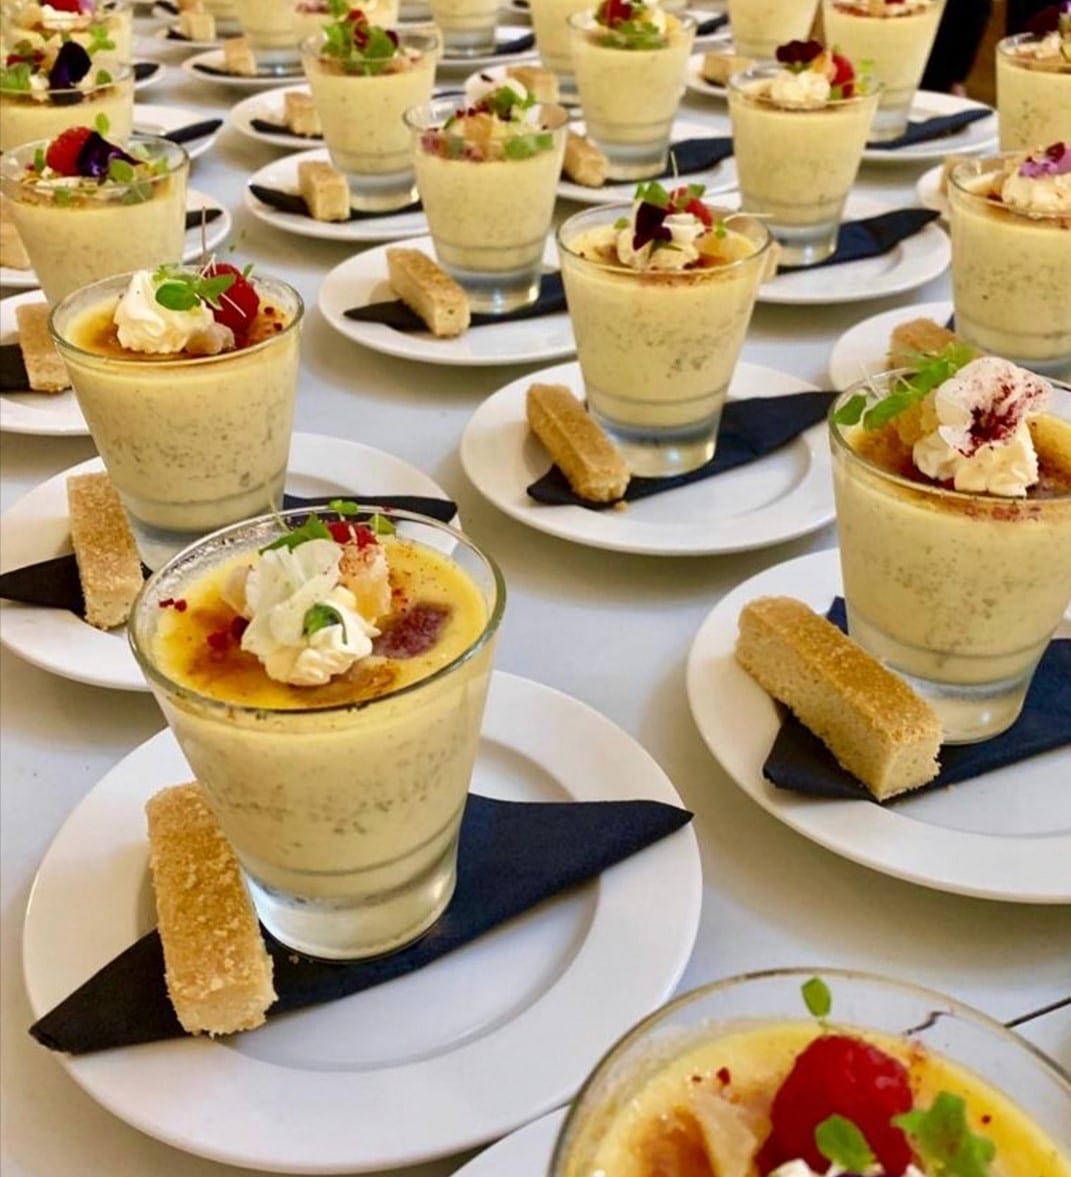 Creme brulee dessert served at a wedding